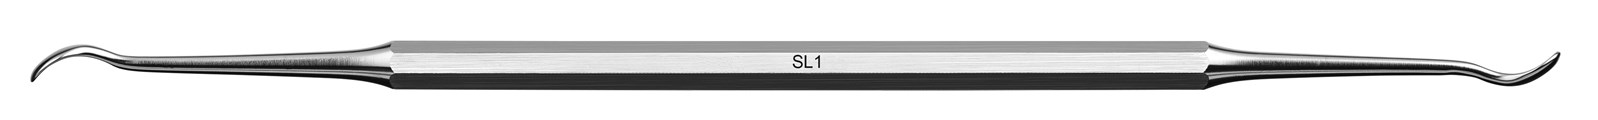 Instrument pro sinus lift - SL1, ADEP fialový